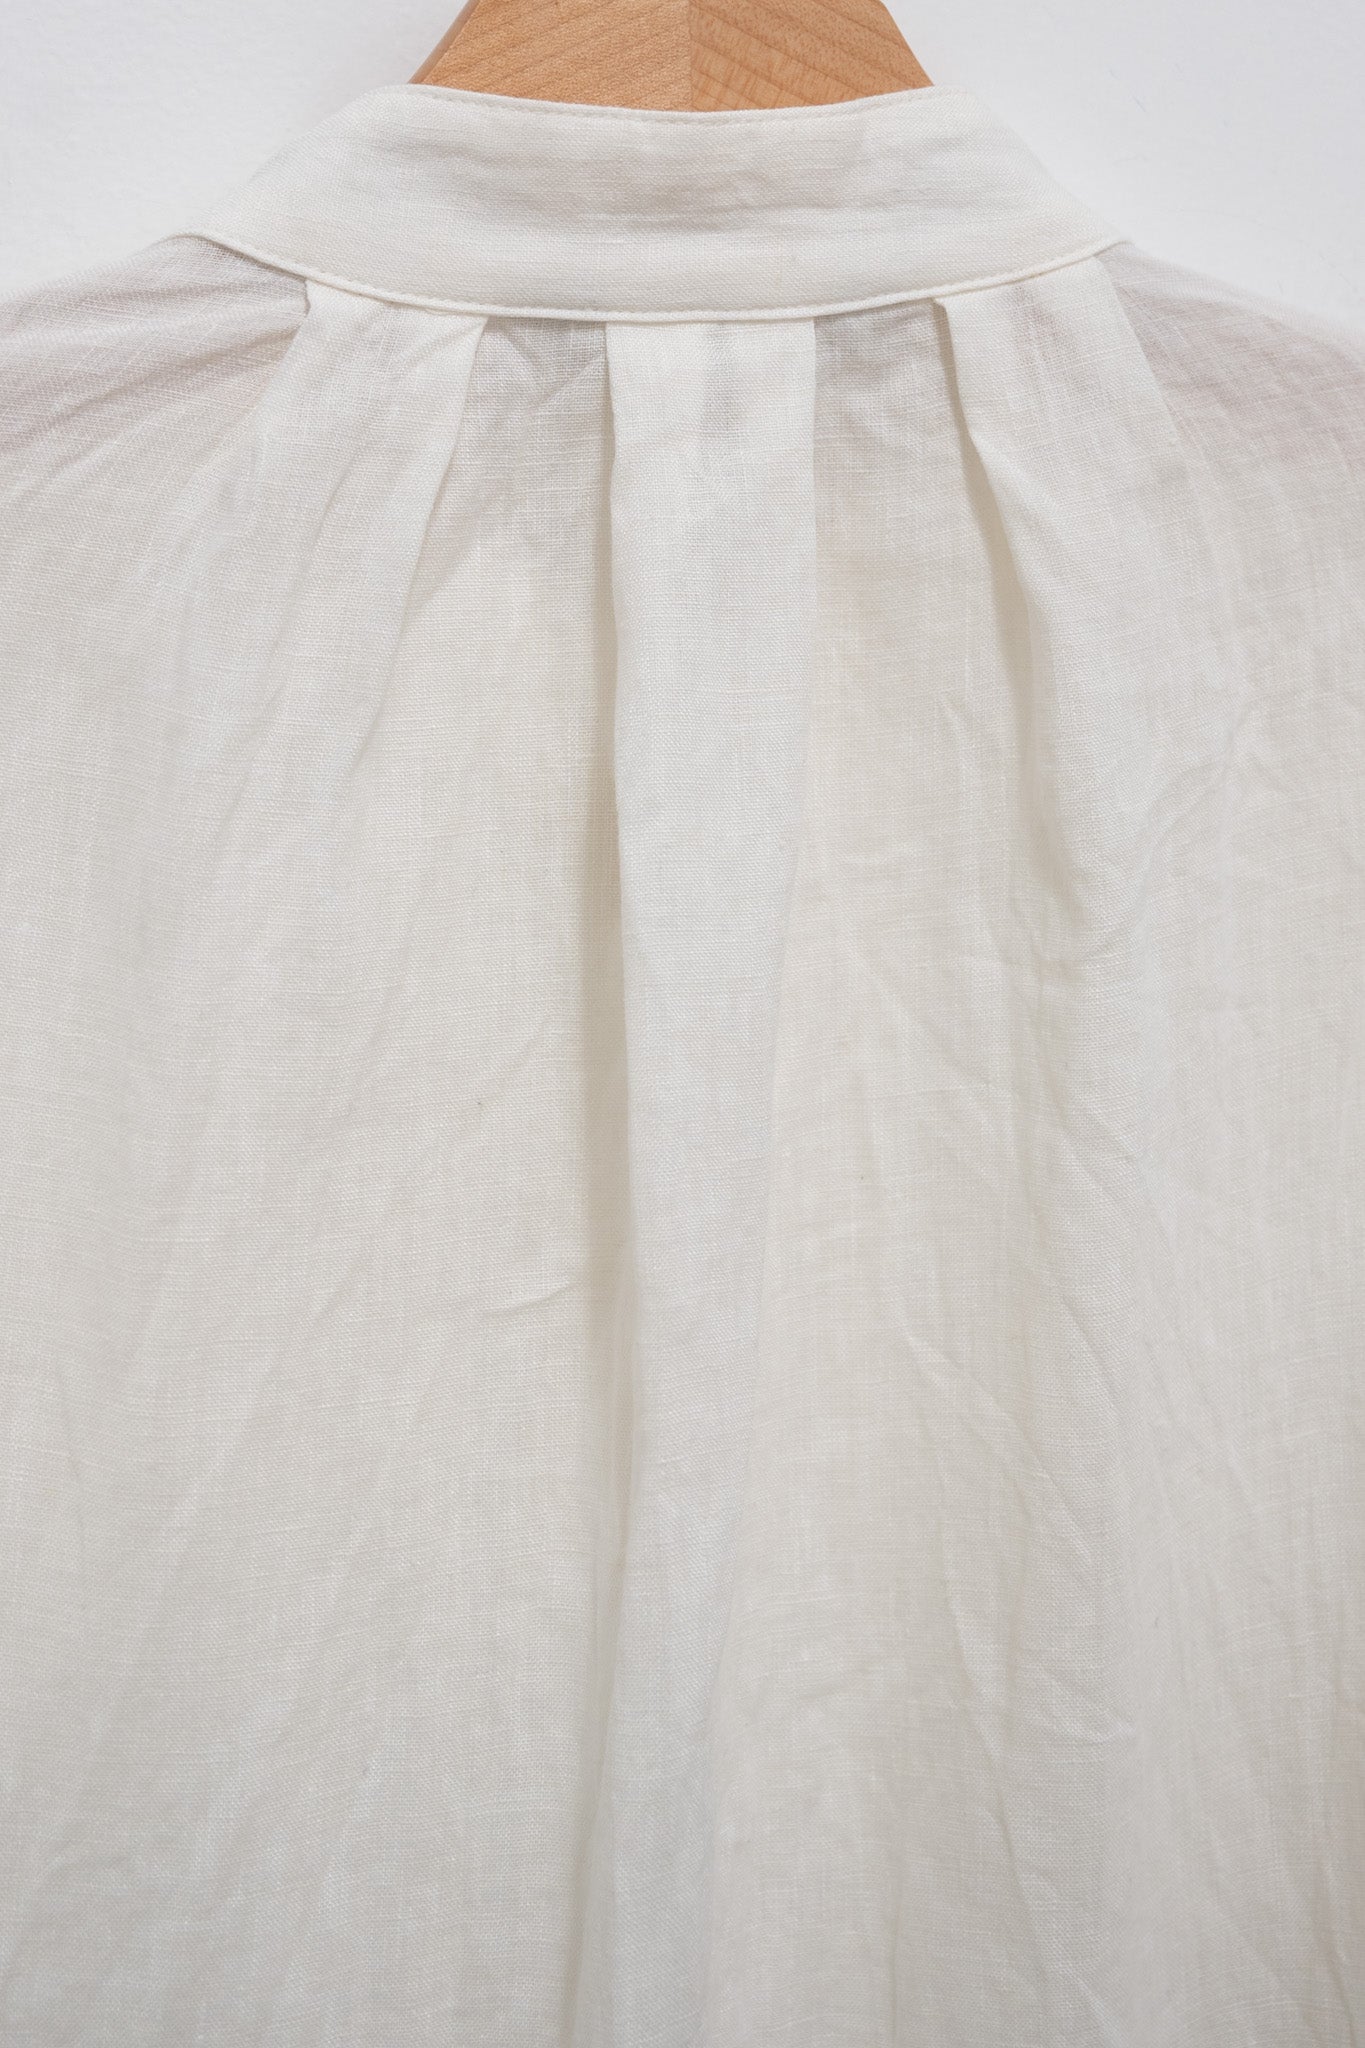 Namu Shop - Ichi Antiquites French Linen Shirt - White